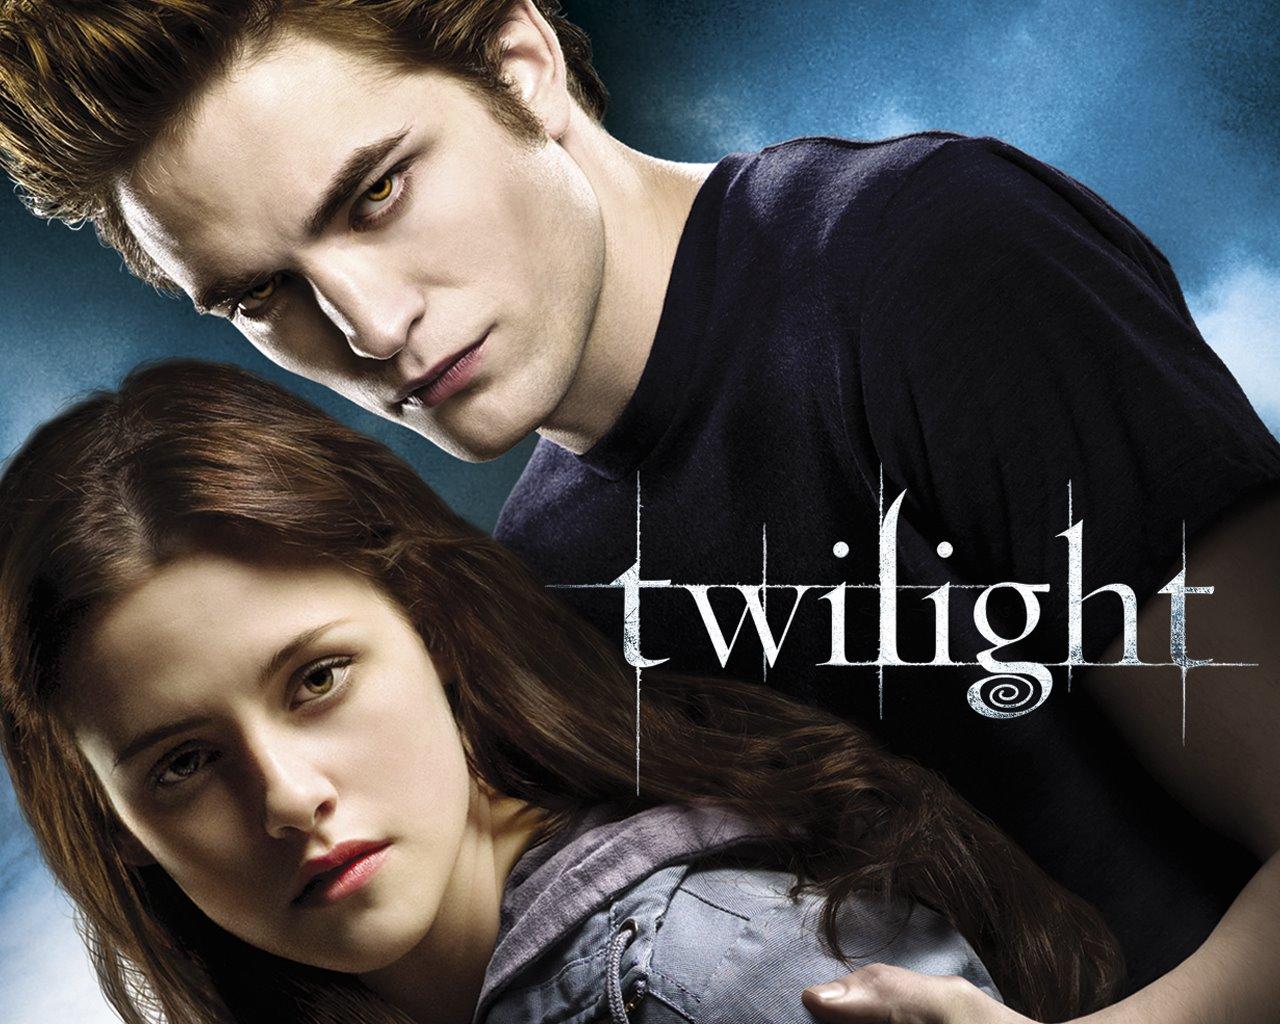 Twilight 4 aurait enfin trouvé son réalisateur : Bill Condon